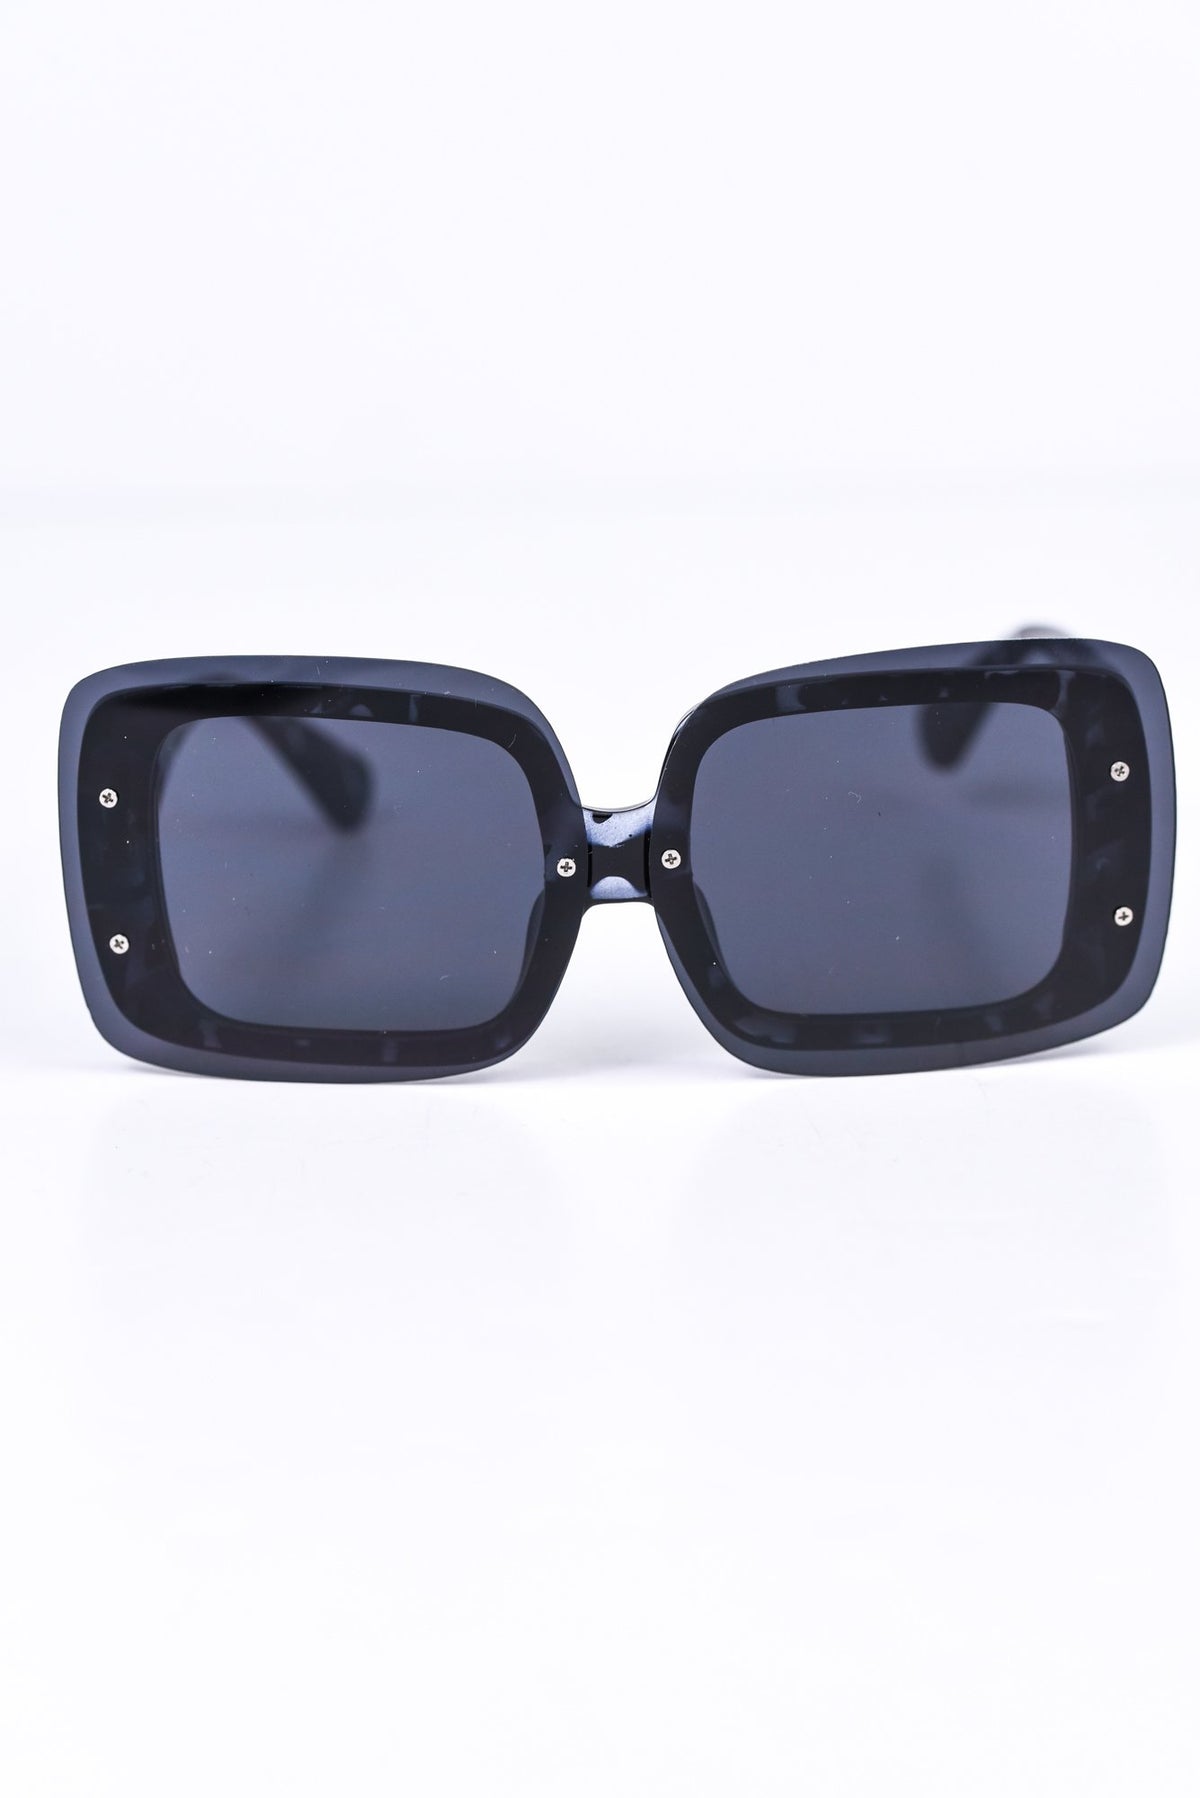 Black Tortoise Shell/Black Lens Sunglasses - SGL233BK - FREE hard case